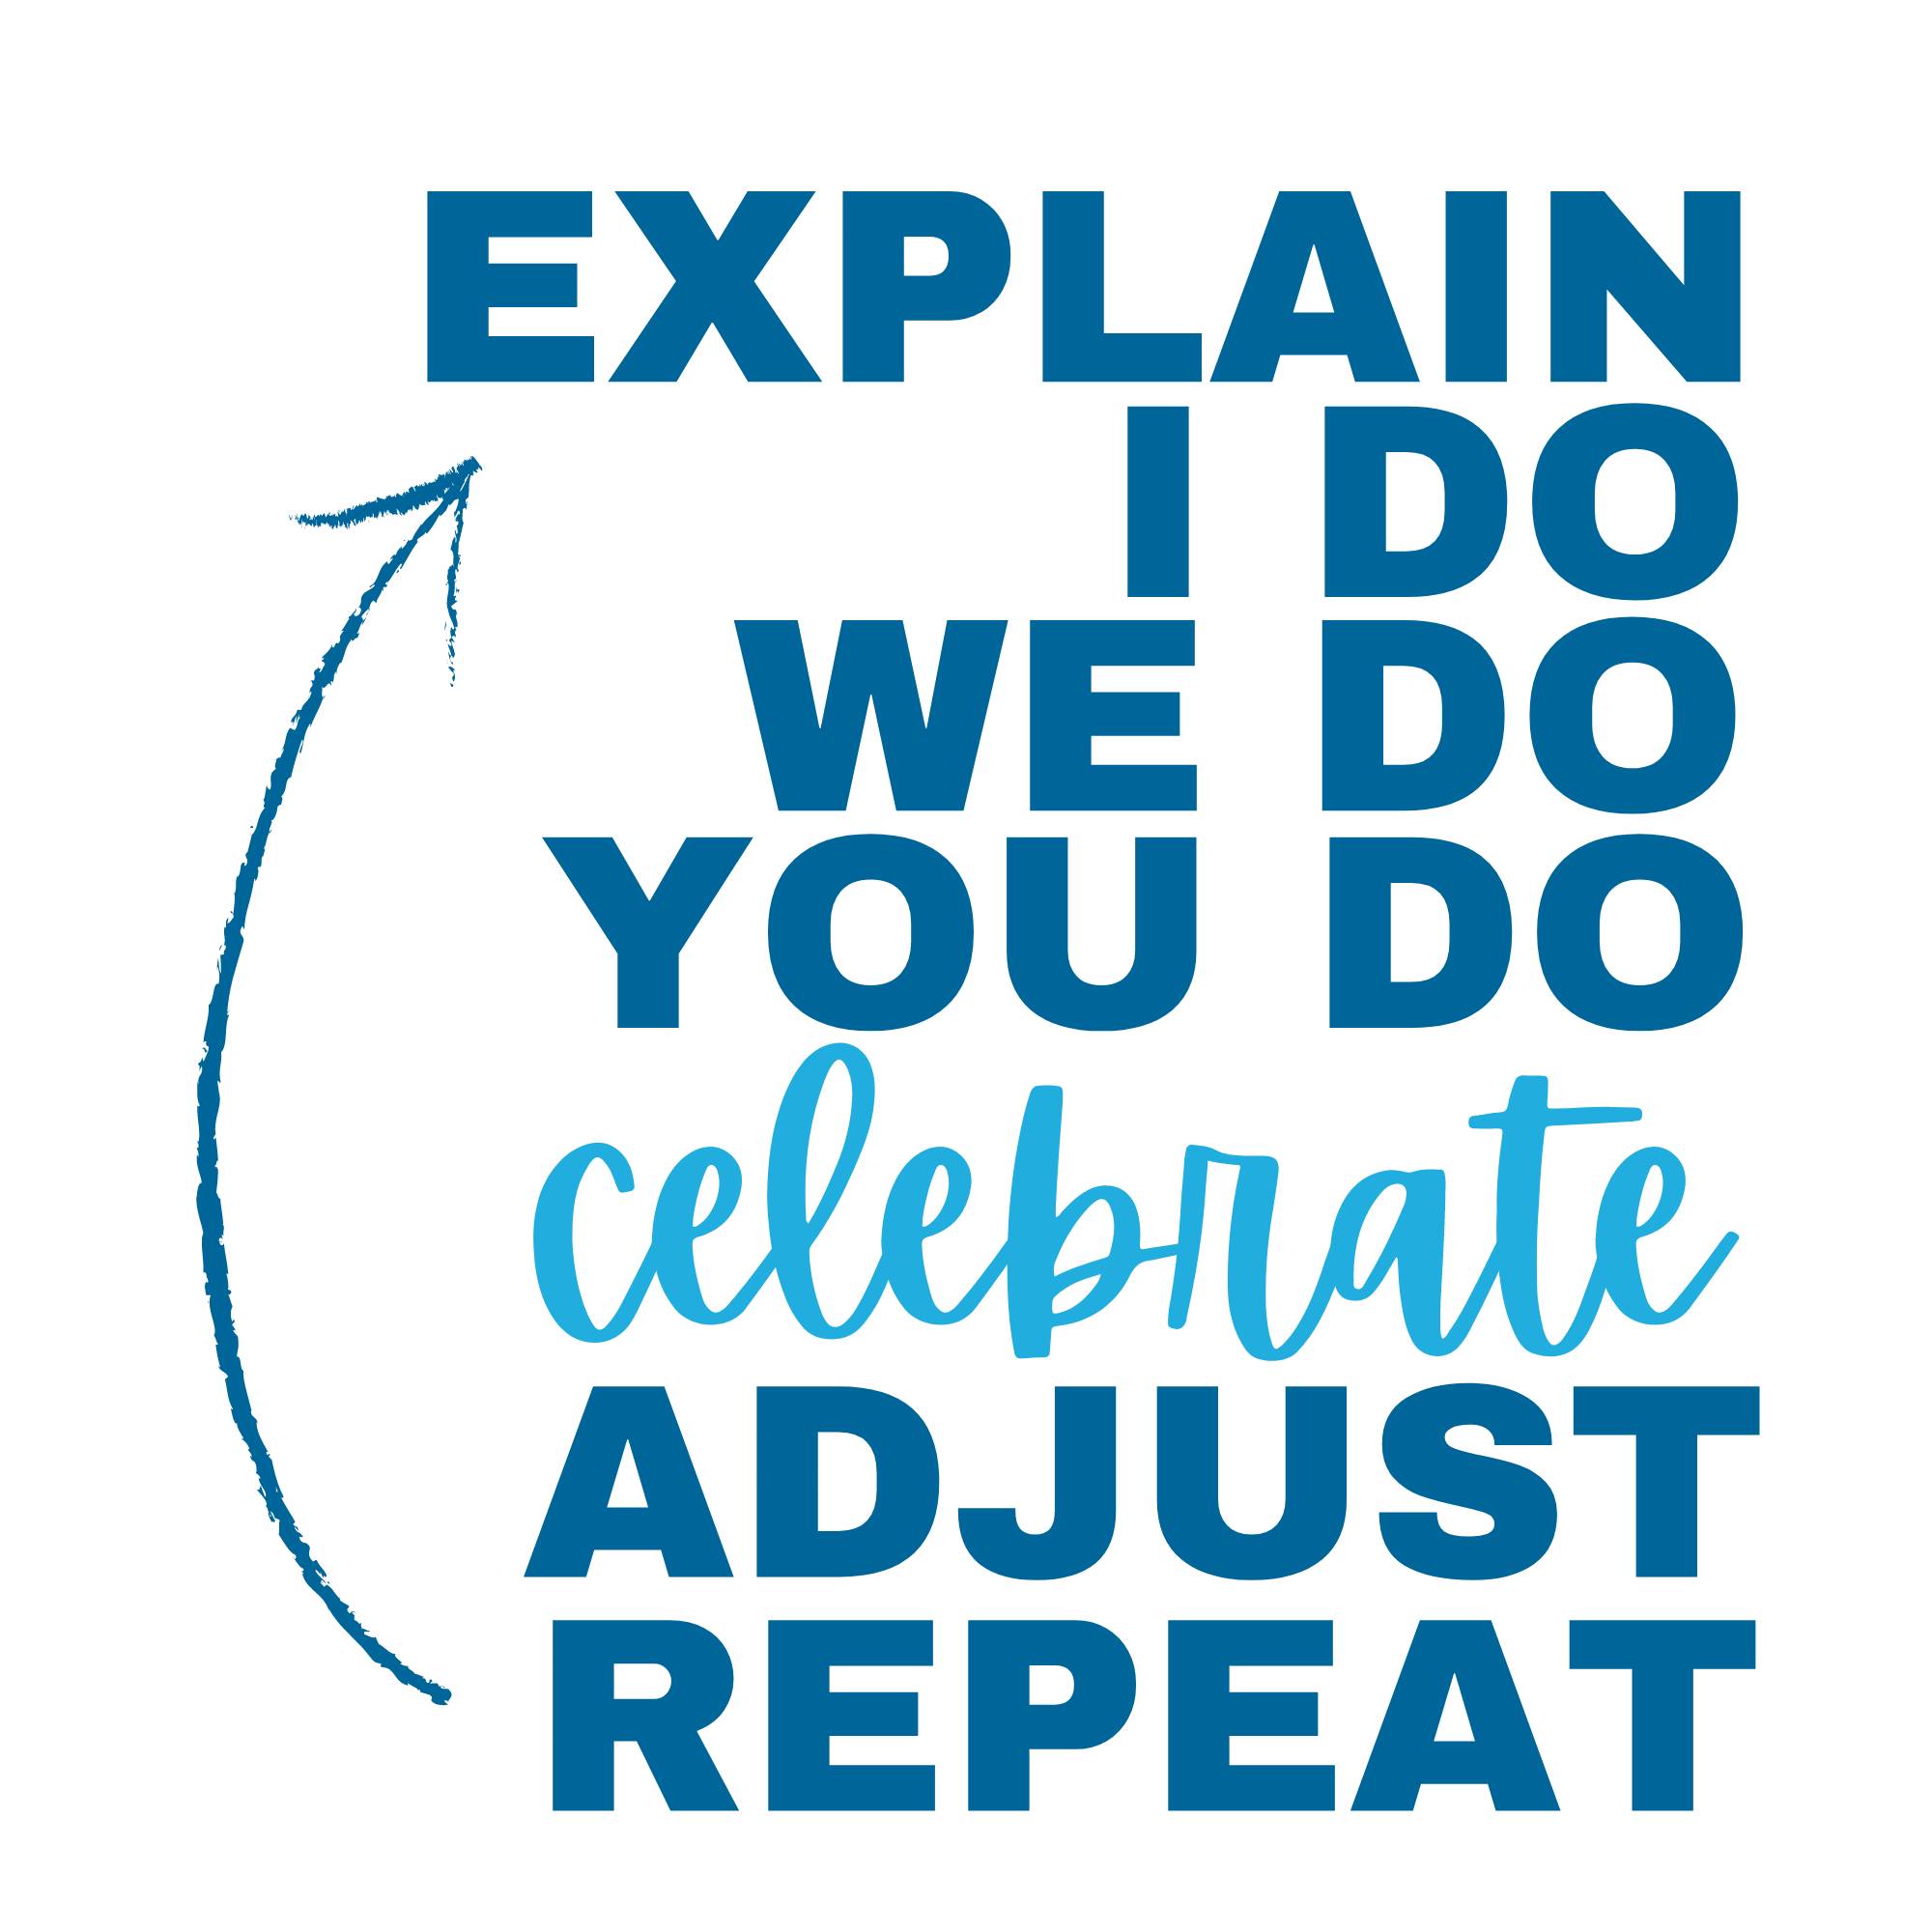 Explain I do we do you do celebrate adjust repeat